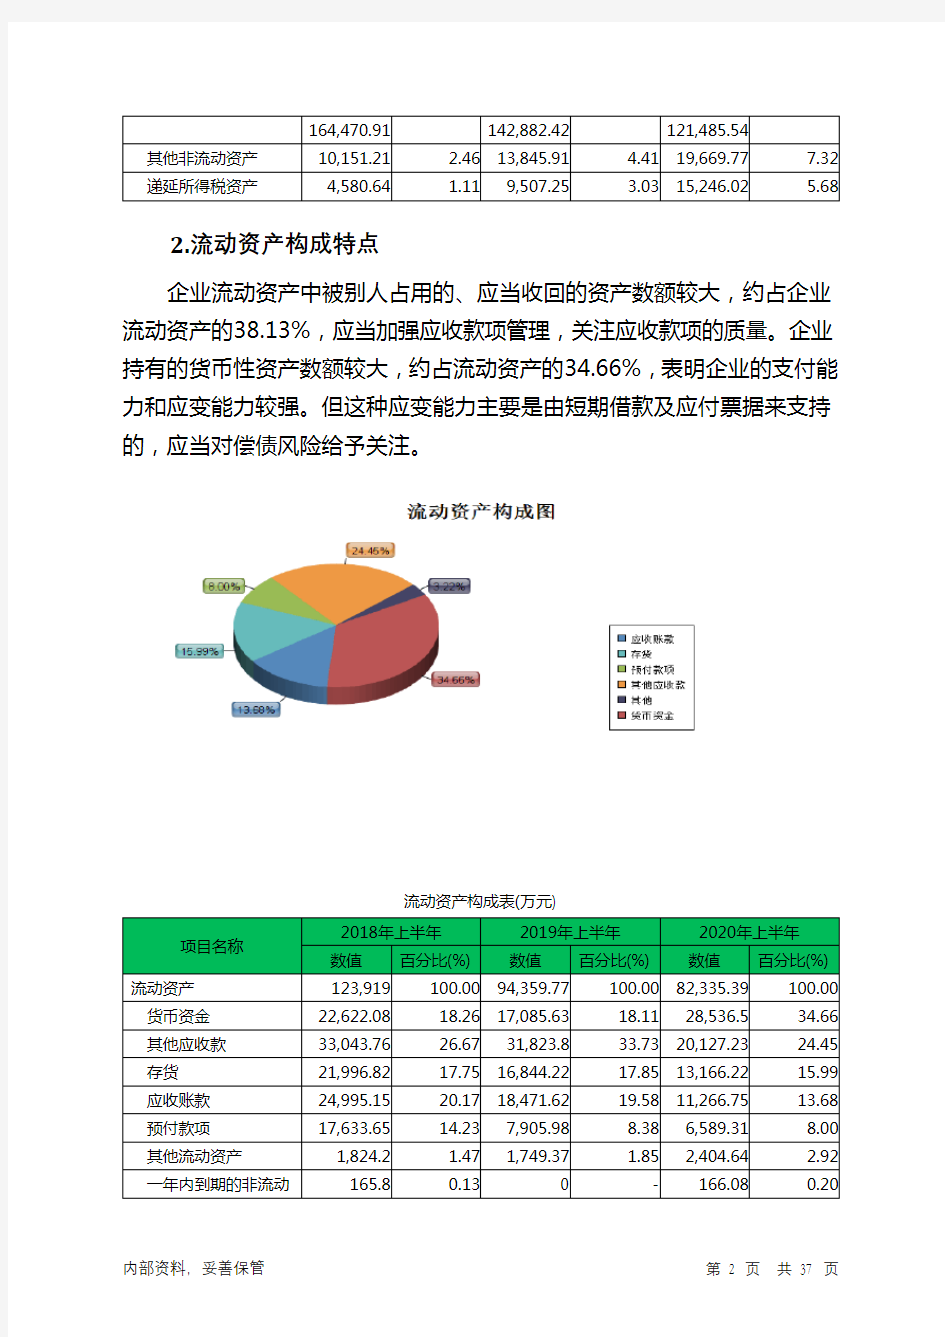 蓝丰生化2020年上半年财务分析详细报告